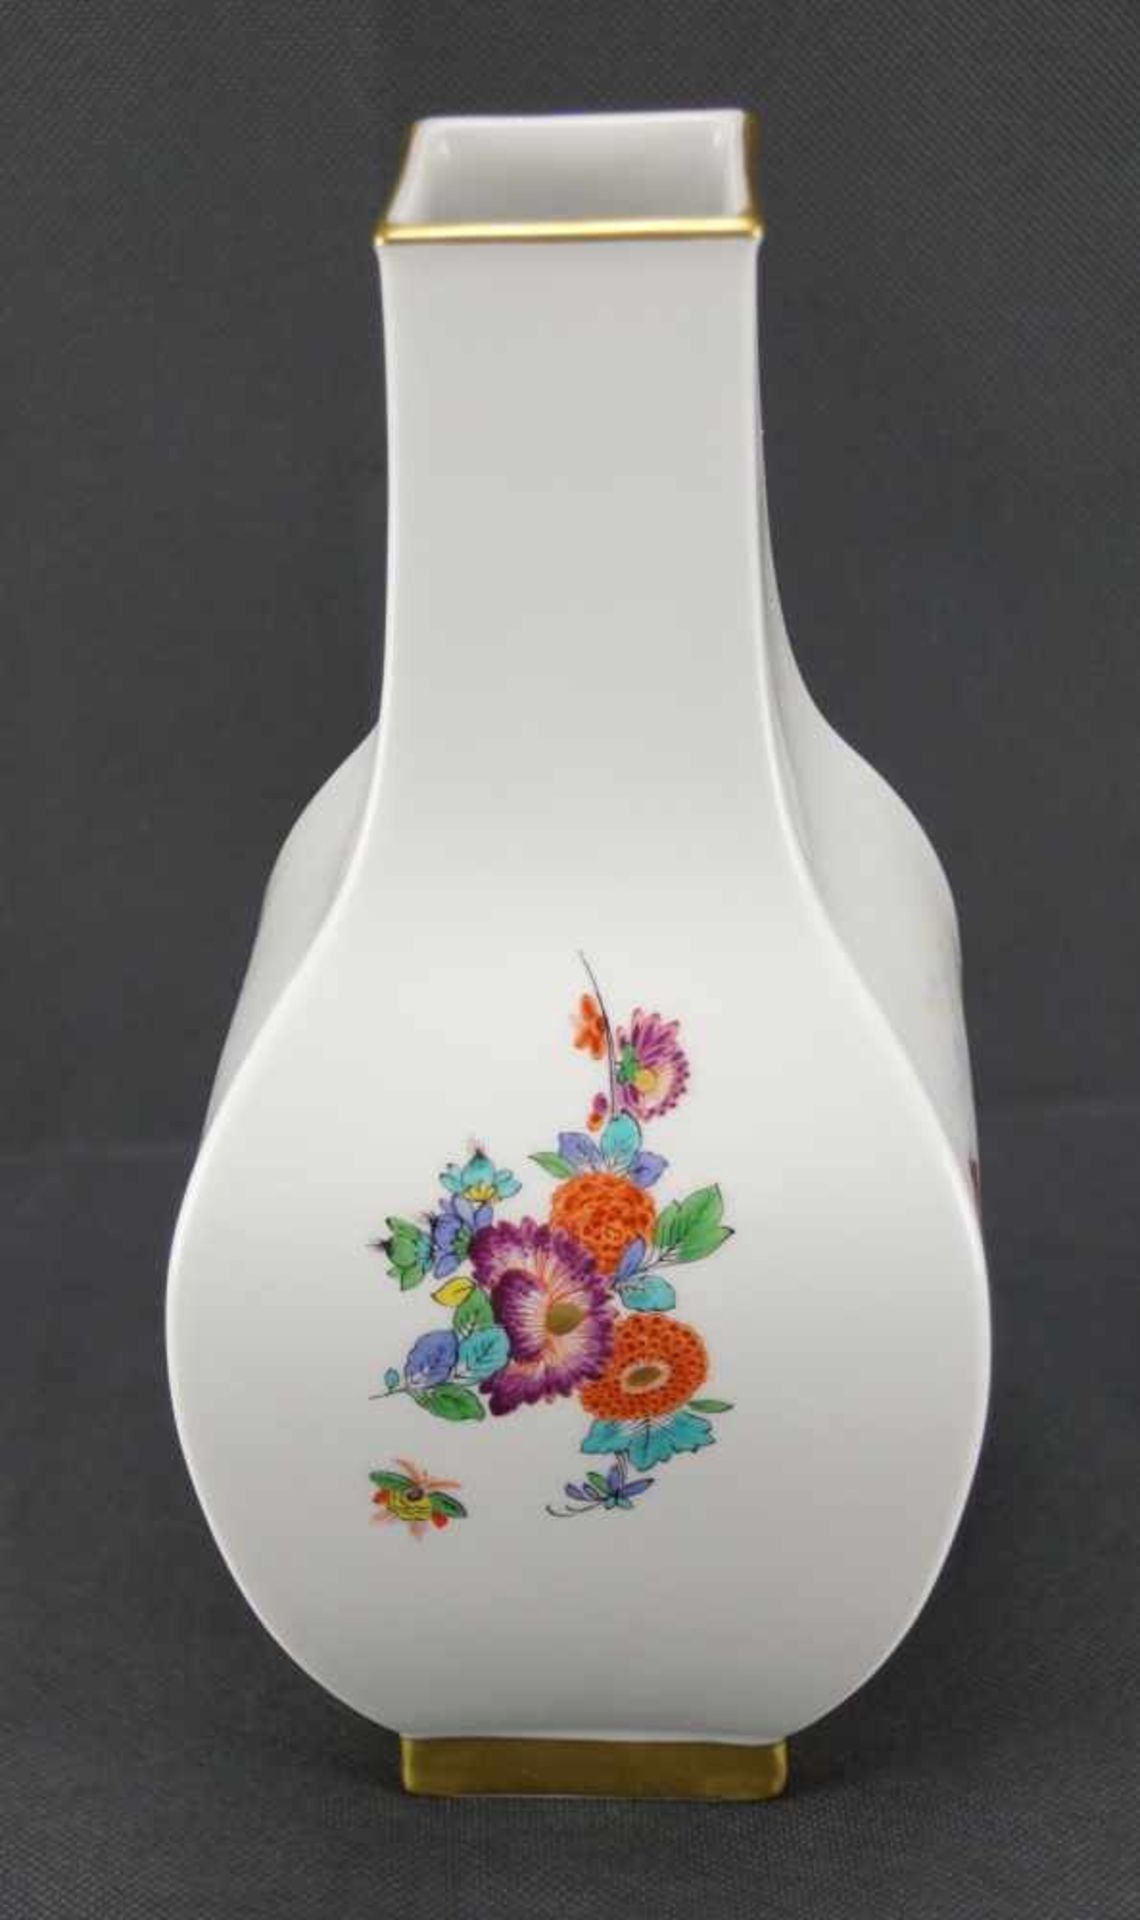 Viereckvase, MeissenSchwertermarke 1. Wahl Jahreszeichen 2012, Entwurf der Vasenform von Paul - Bild 3 aus 5